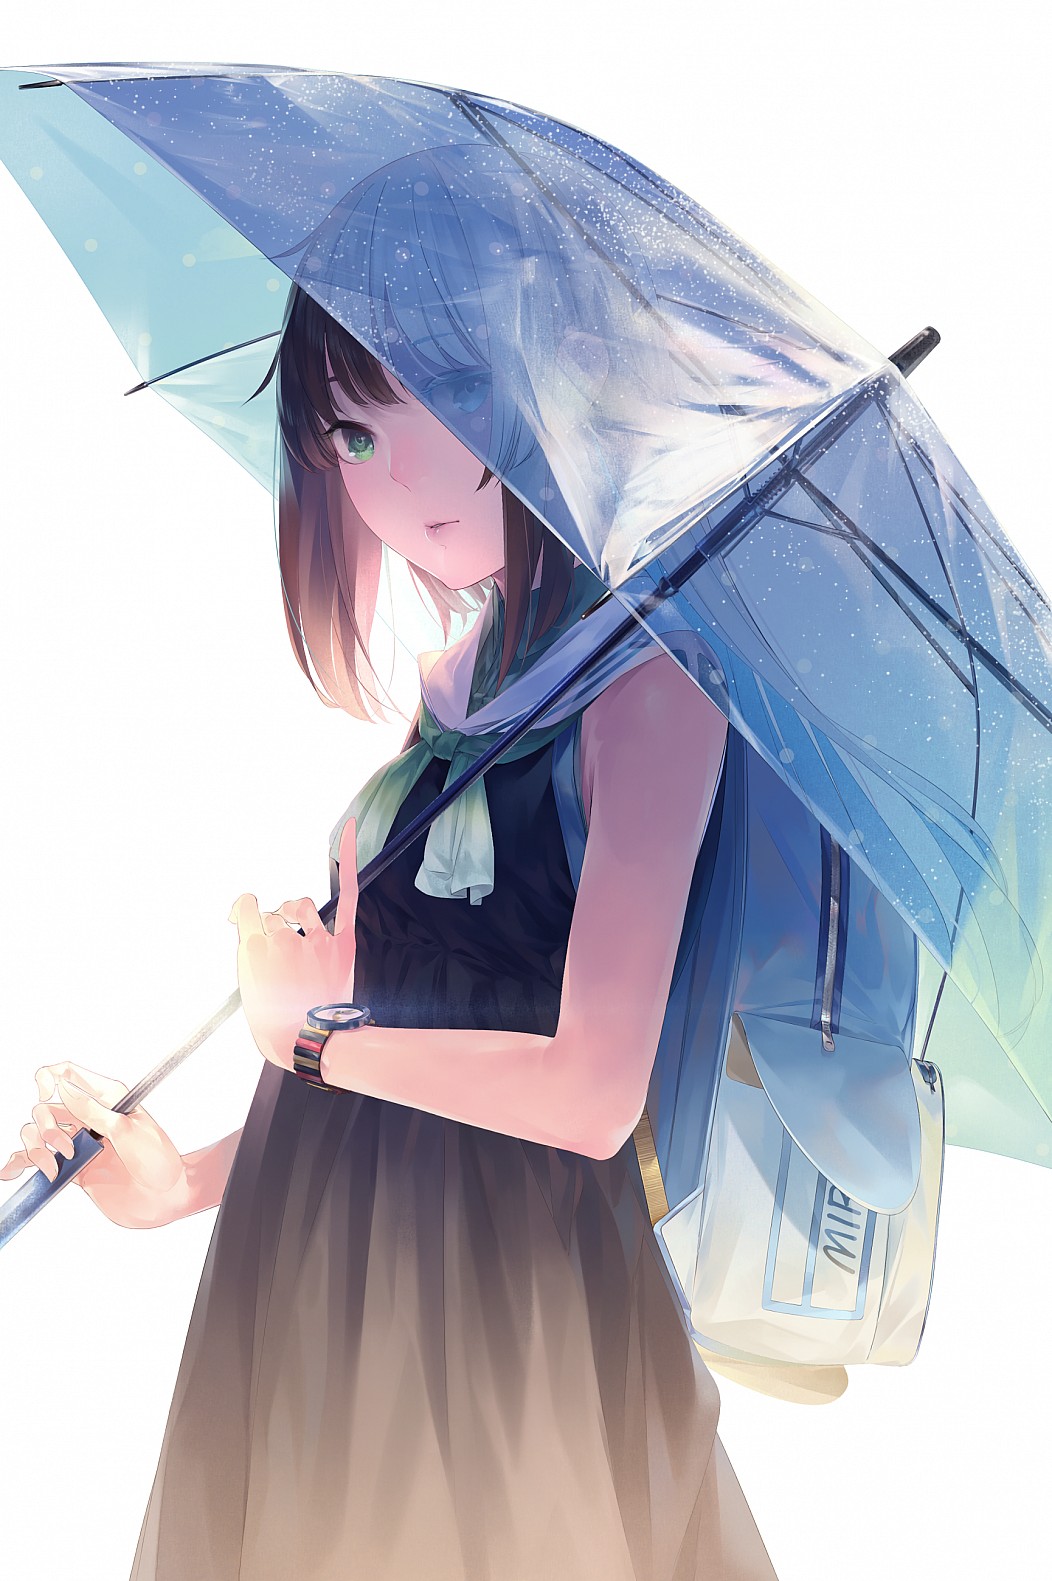 Аниме зонт